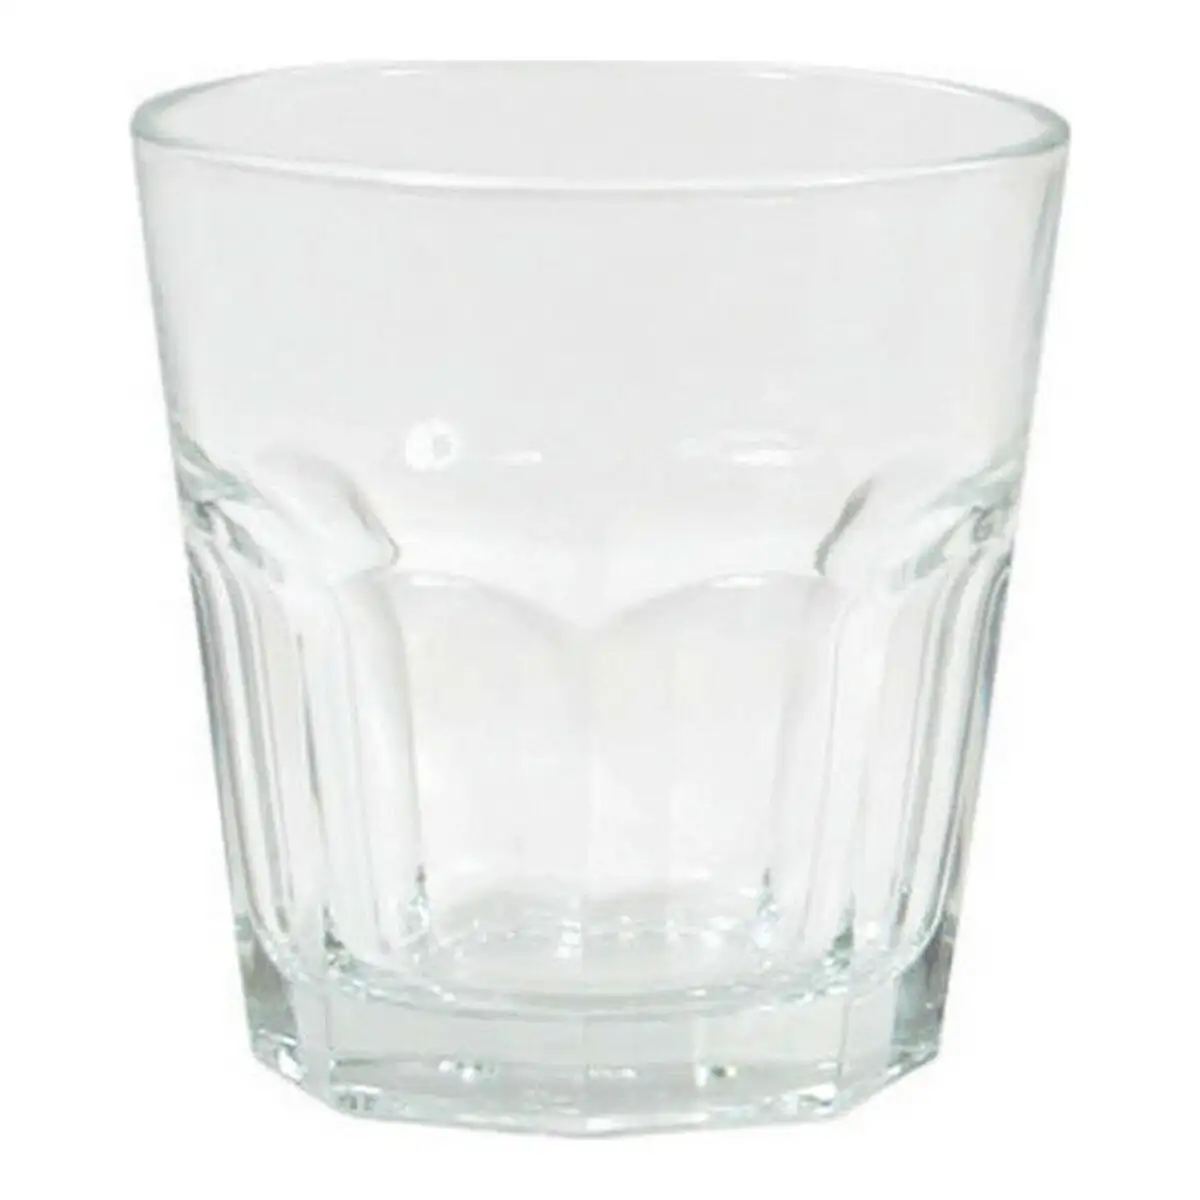 Set de verres lav aras verre transparent 200 cc 6 pcs _2107. DIAYTAR SENEGAL - Votre Portail Vers l'Exclusivité. Explorez notre boutique en ligne pour trouver des produits uniques et exclusifs, conçus pour les amateurs de qualité.